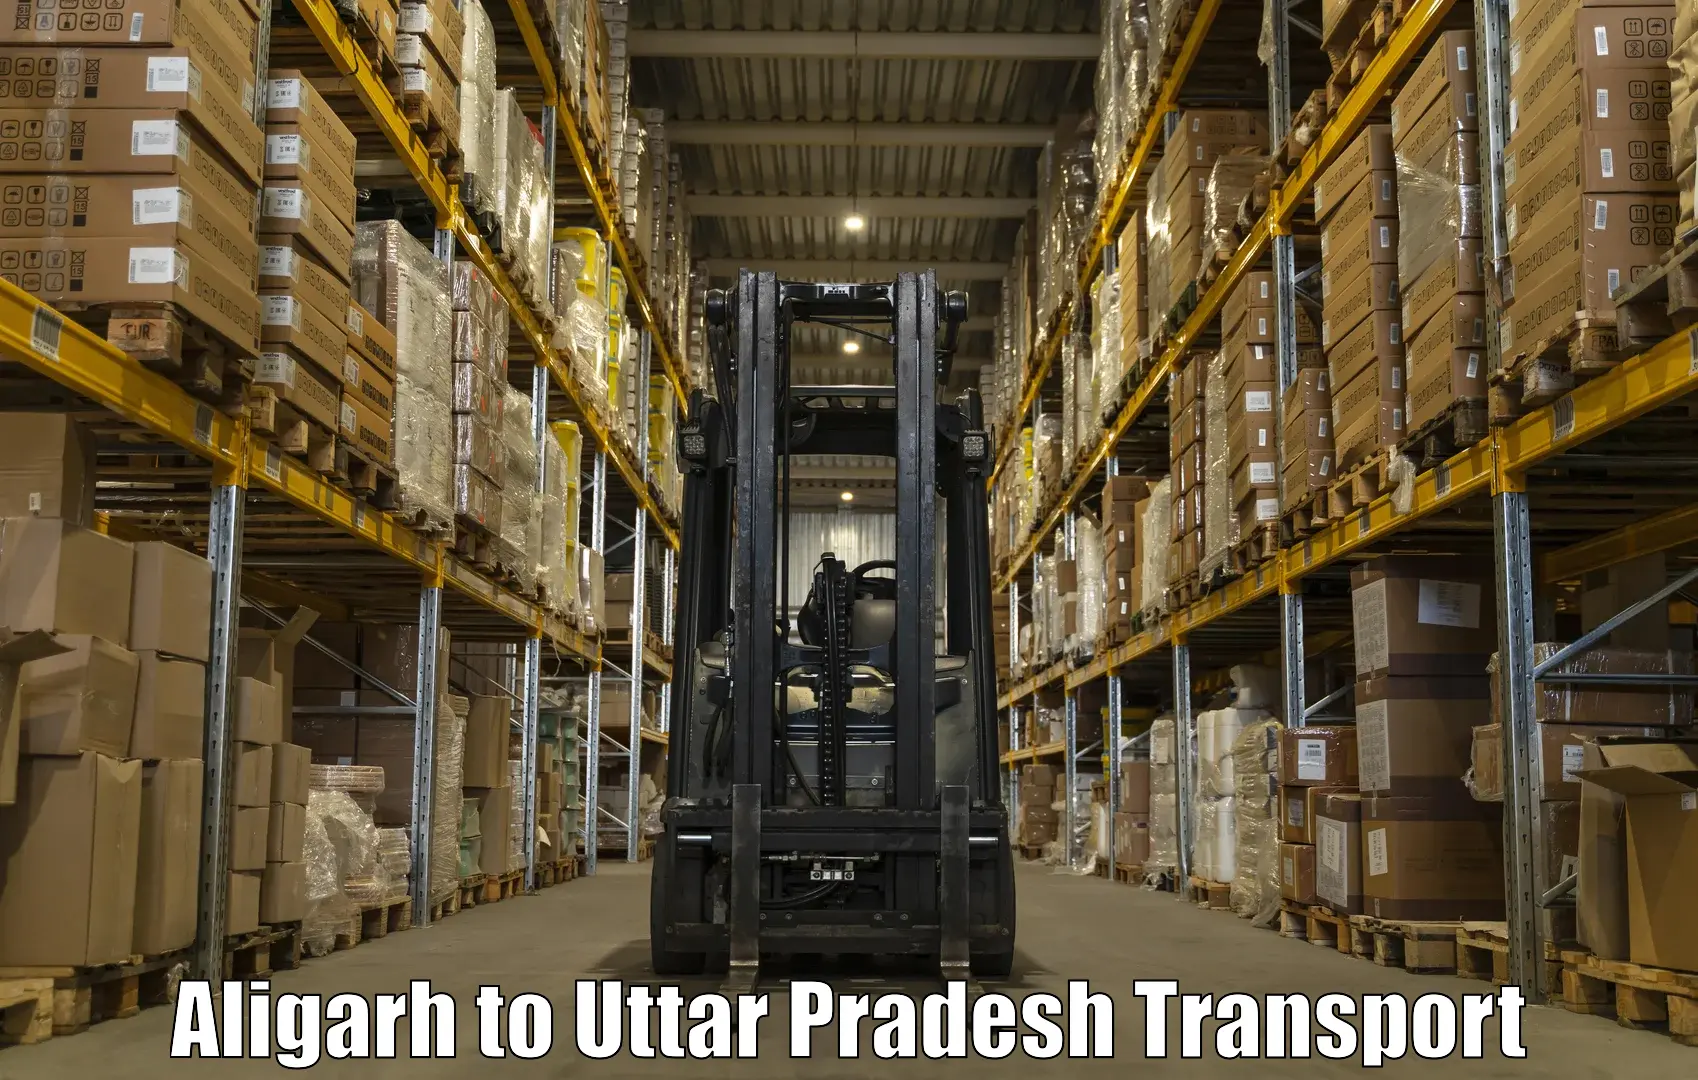 Daily parcel service transport Aligarh to Sant Kabir Nagar